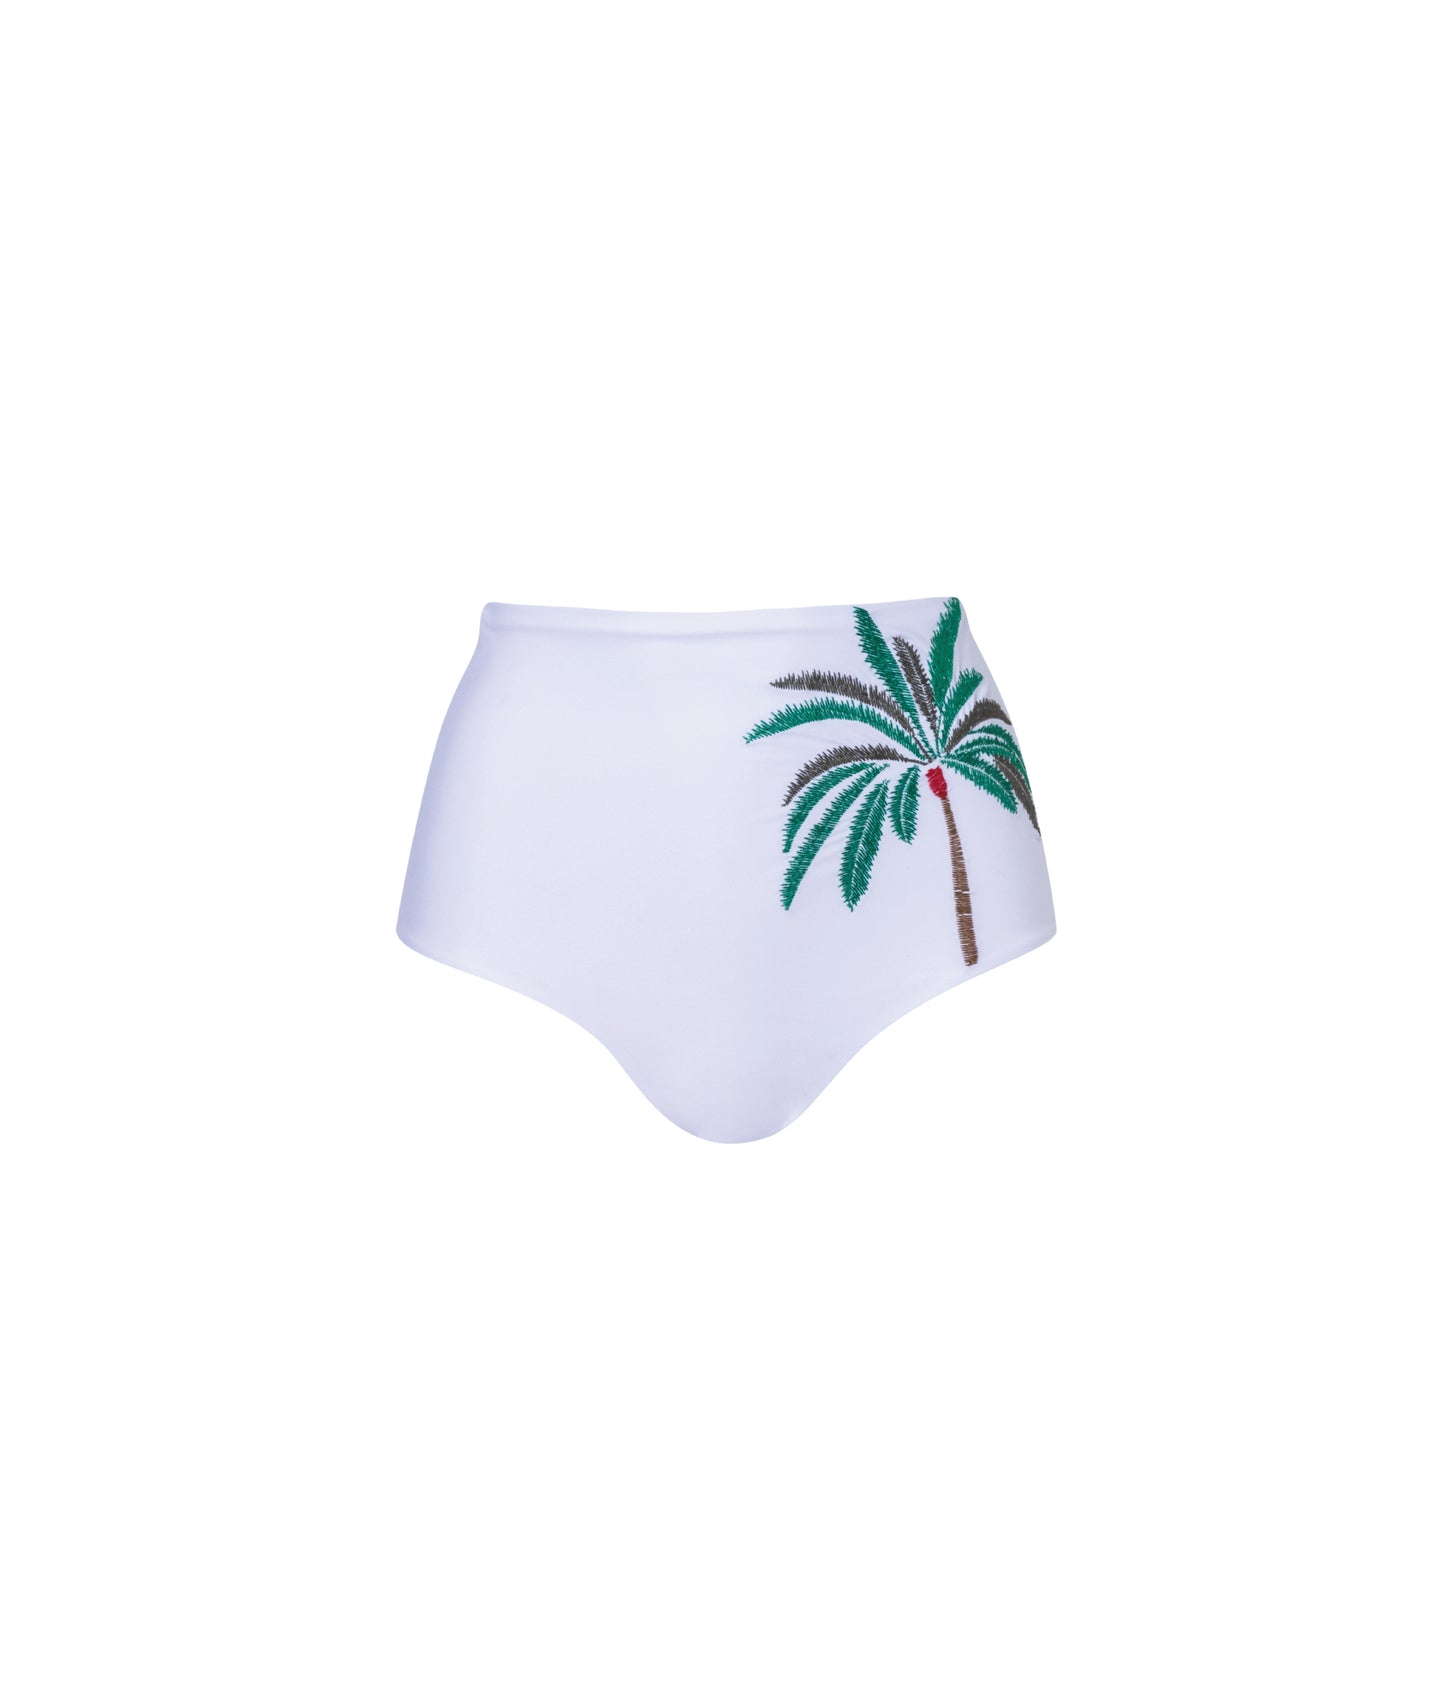 Verdelimon - Bikini Bottom -  Banes - Printed - White Palmeras Bordado - Front